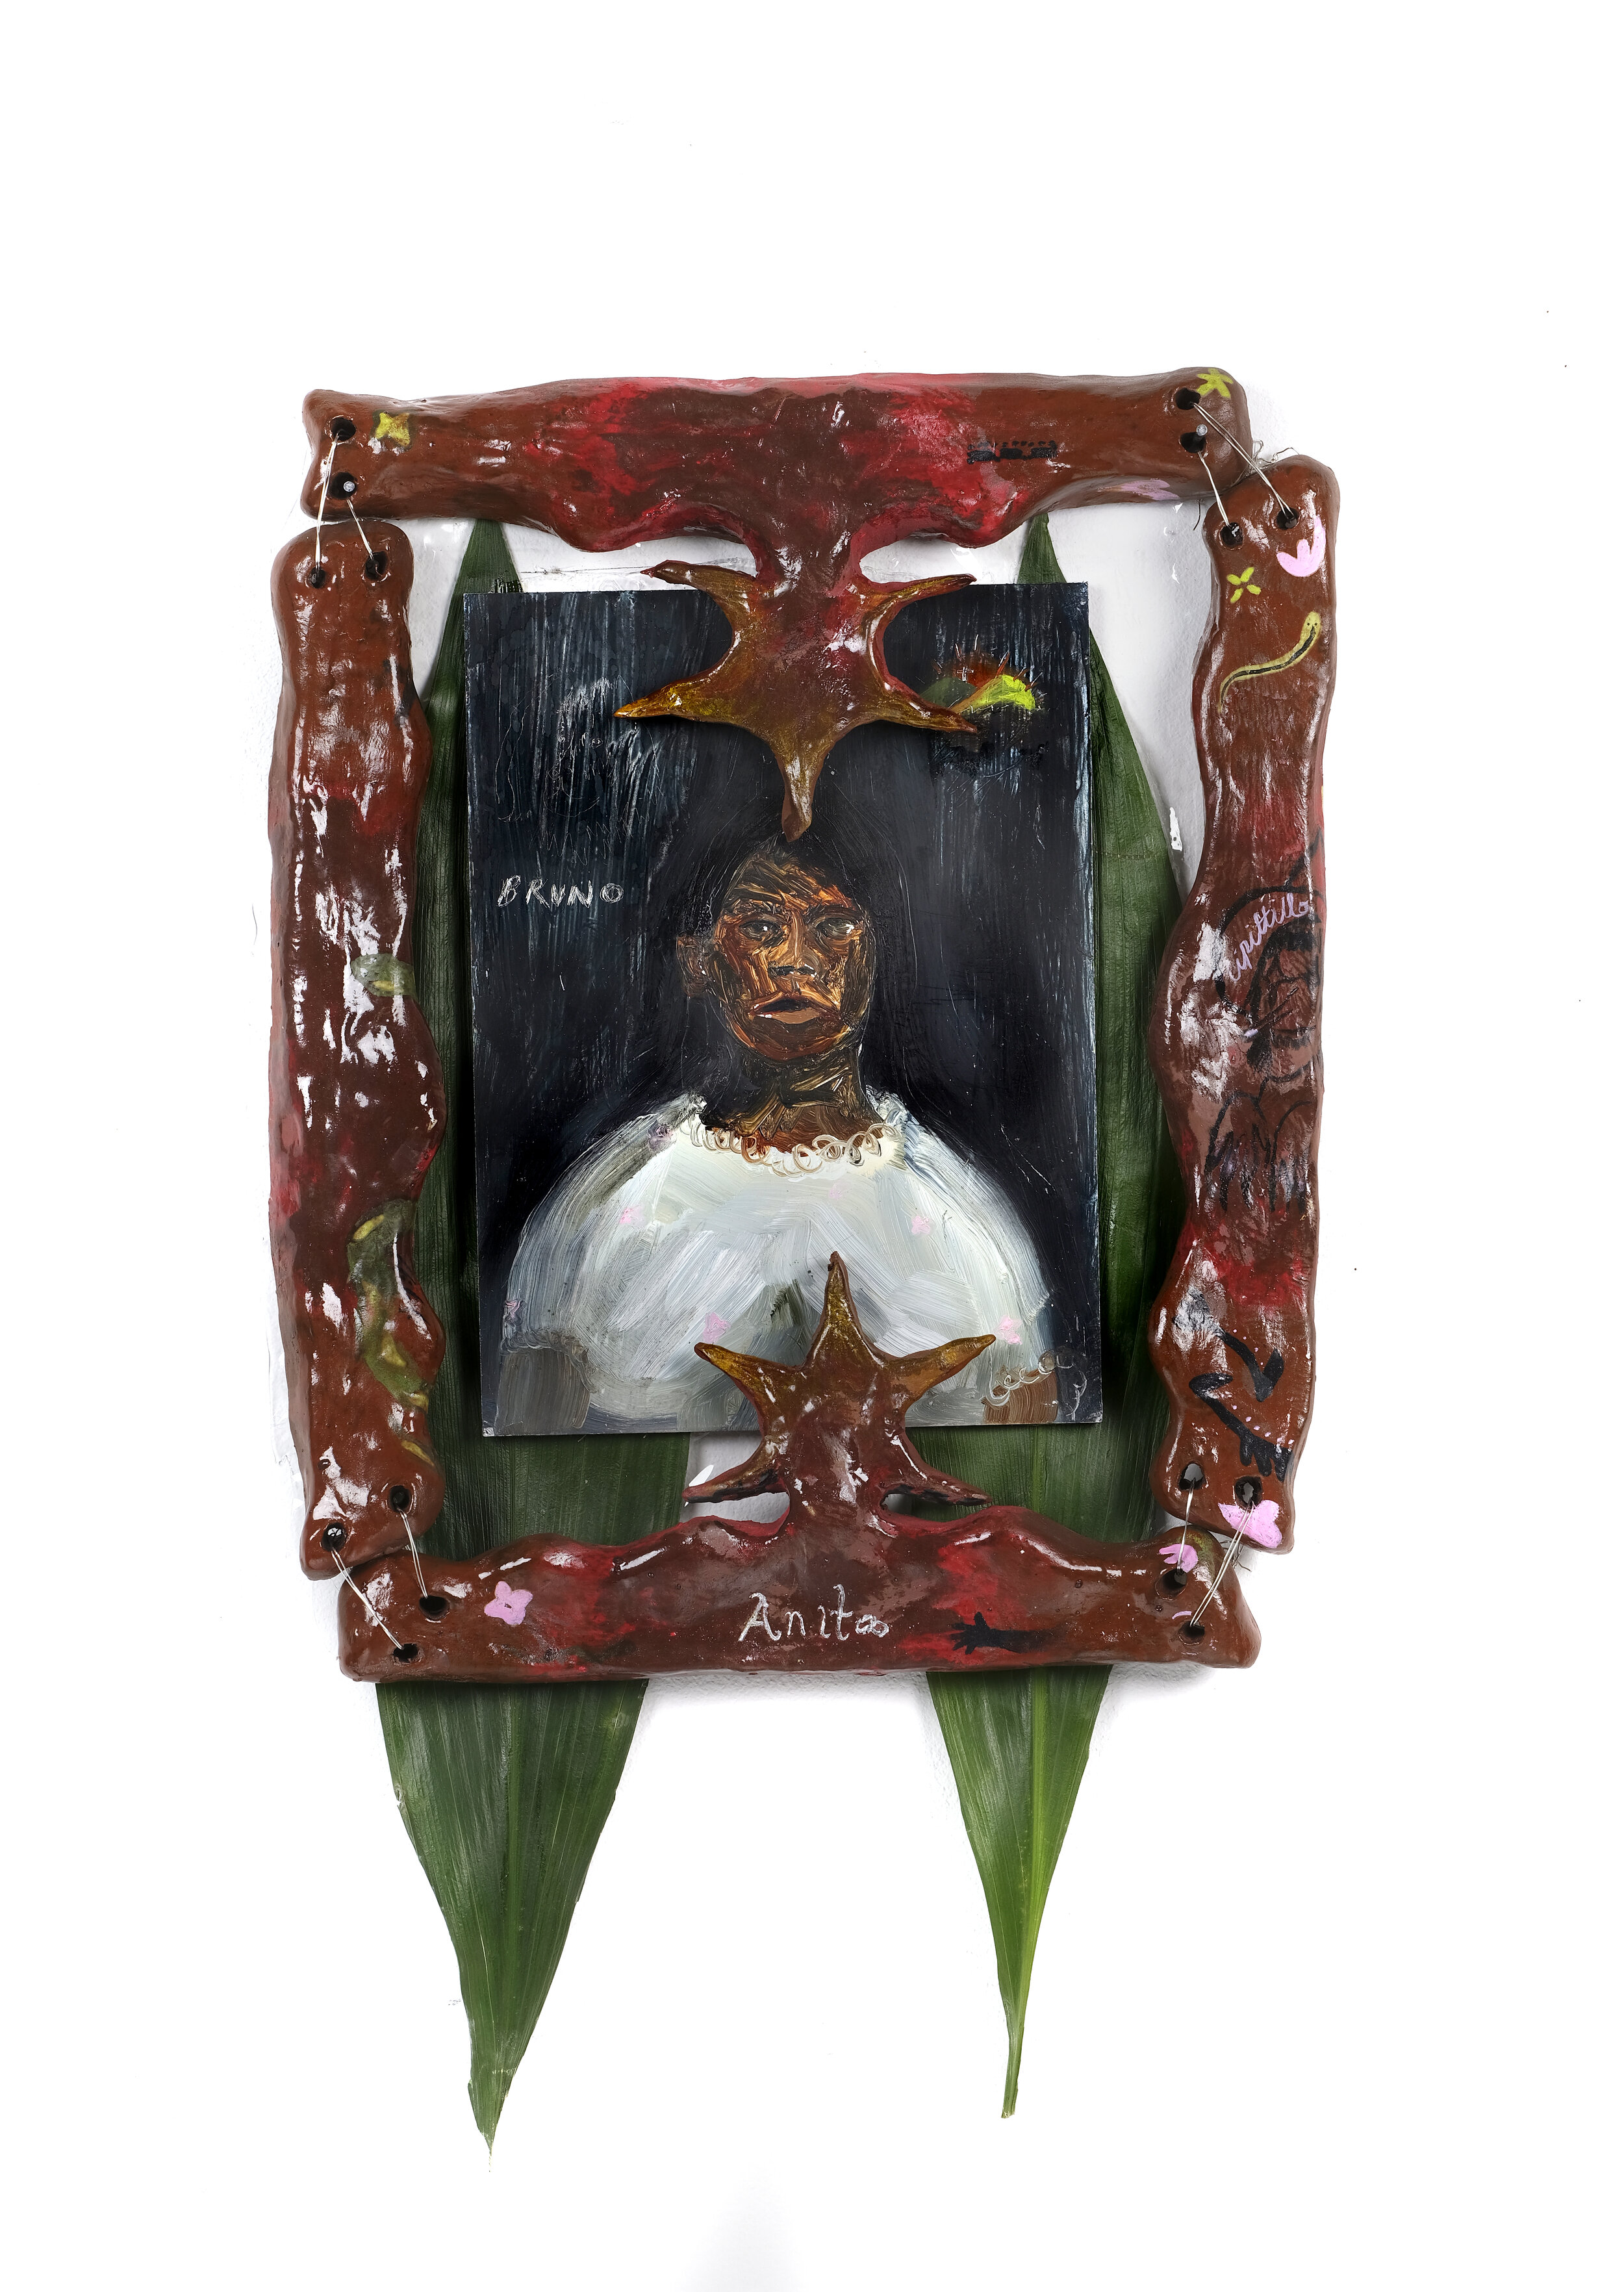  Susan Flores-Melgar,&nbsp; Anita , 2019. Glazed ceramic, banana leaves, vinyl, oil on aluminum panel. 8 x 10 in. Image courtesy of the artist.&nbsp; 